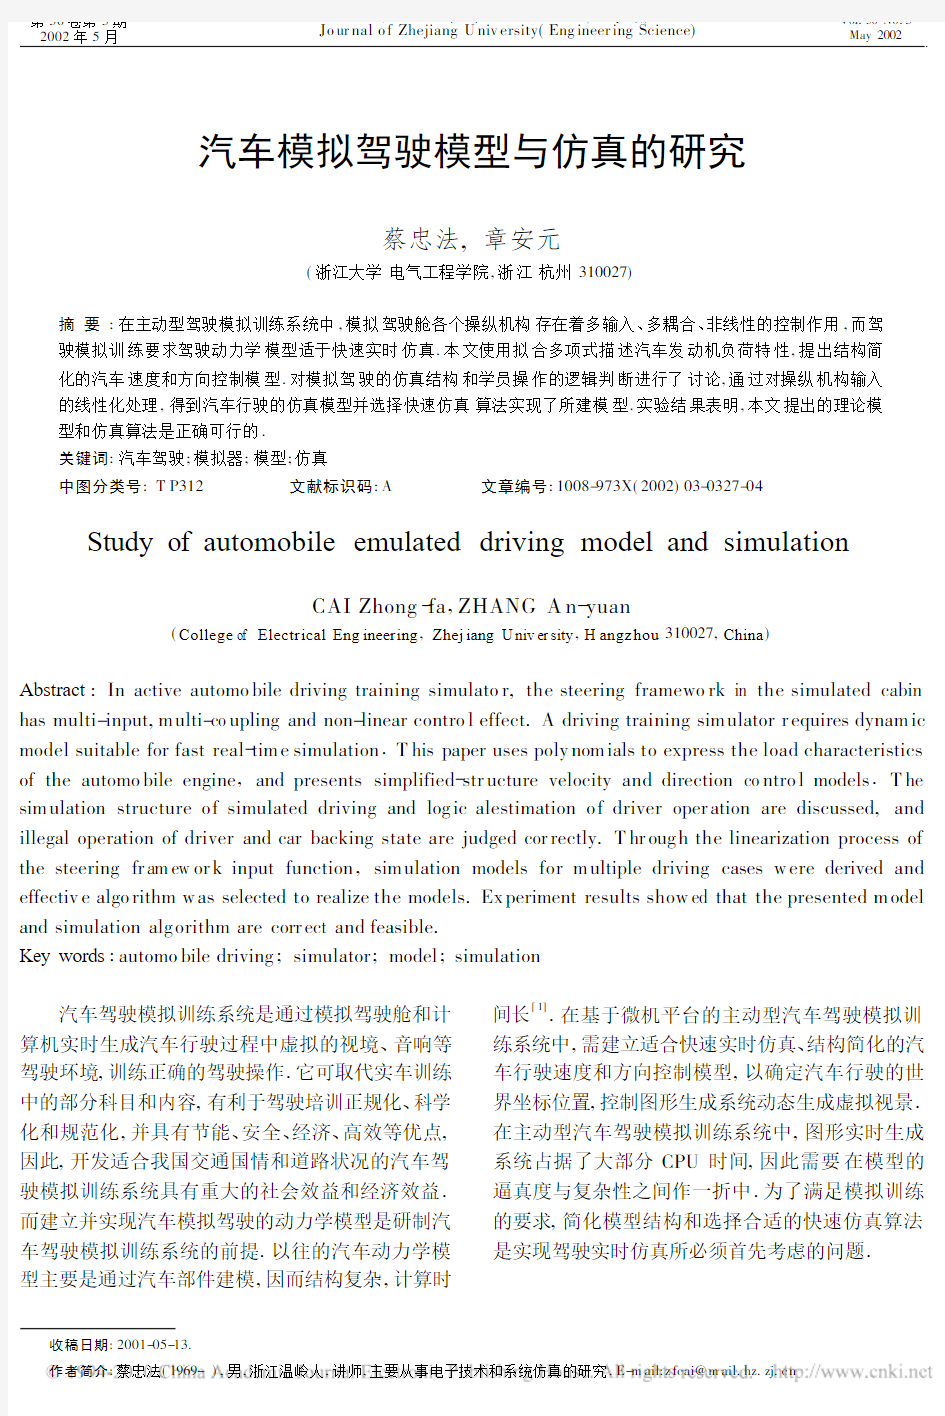 汽车模拟驾驶模型与仿真的研究